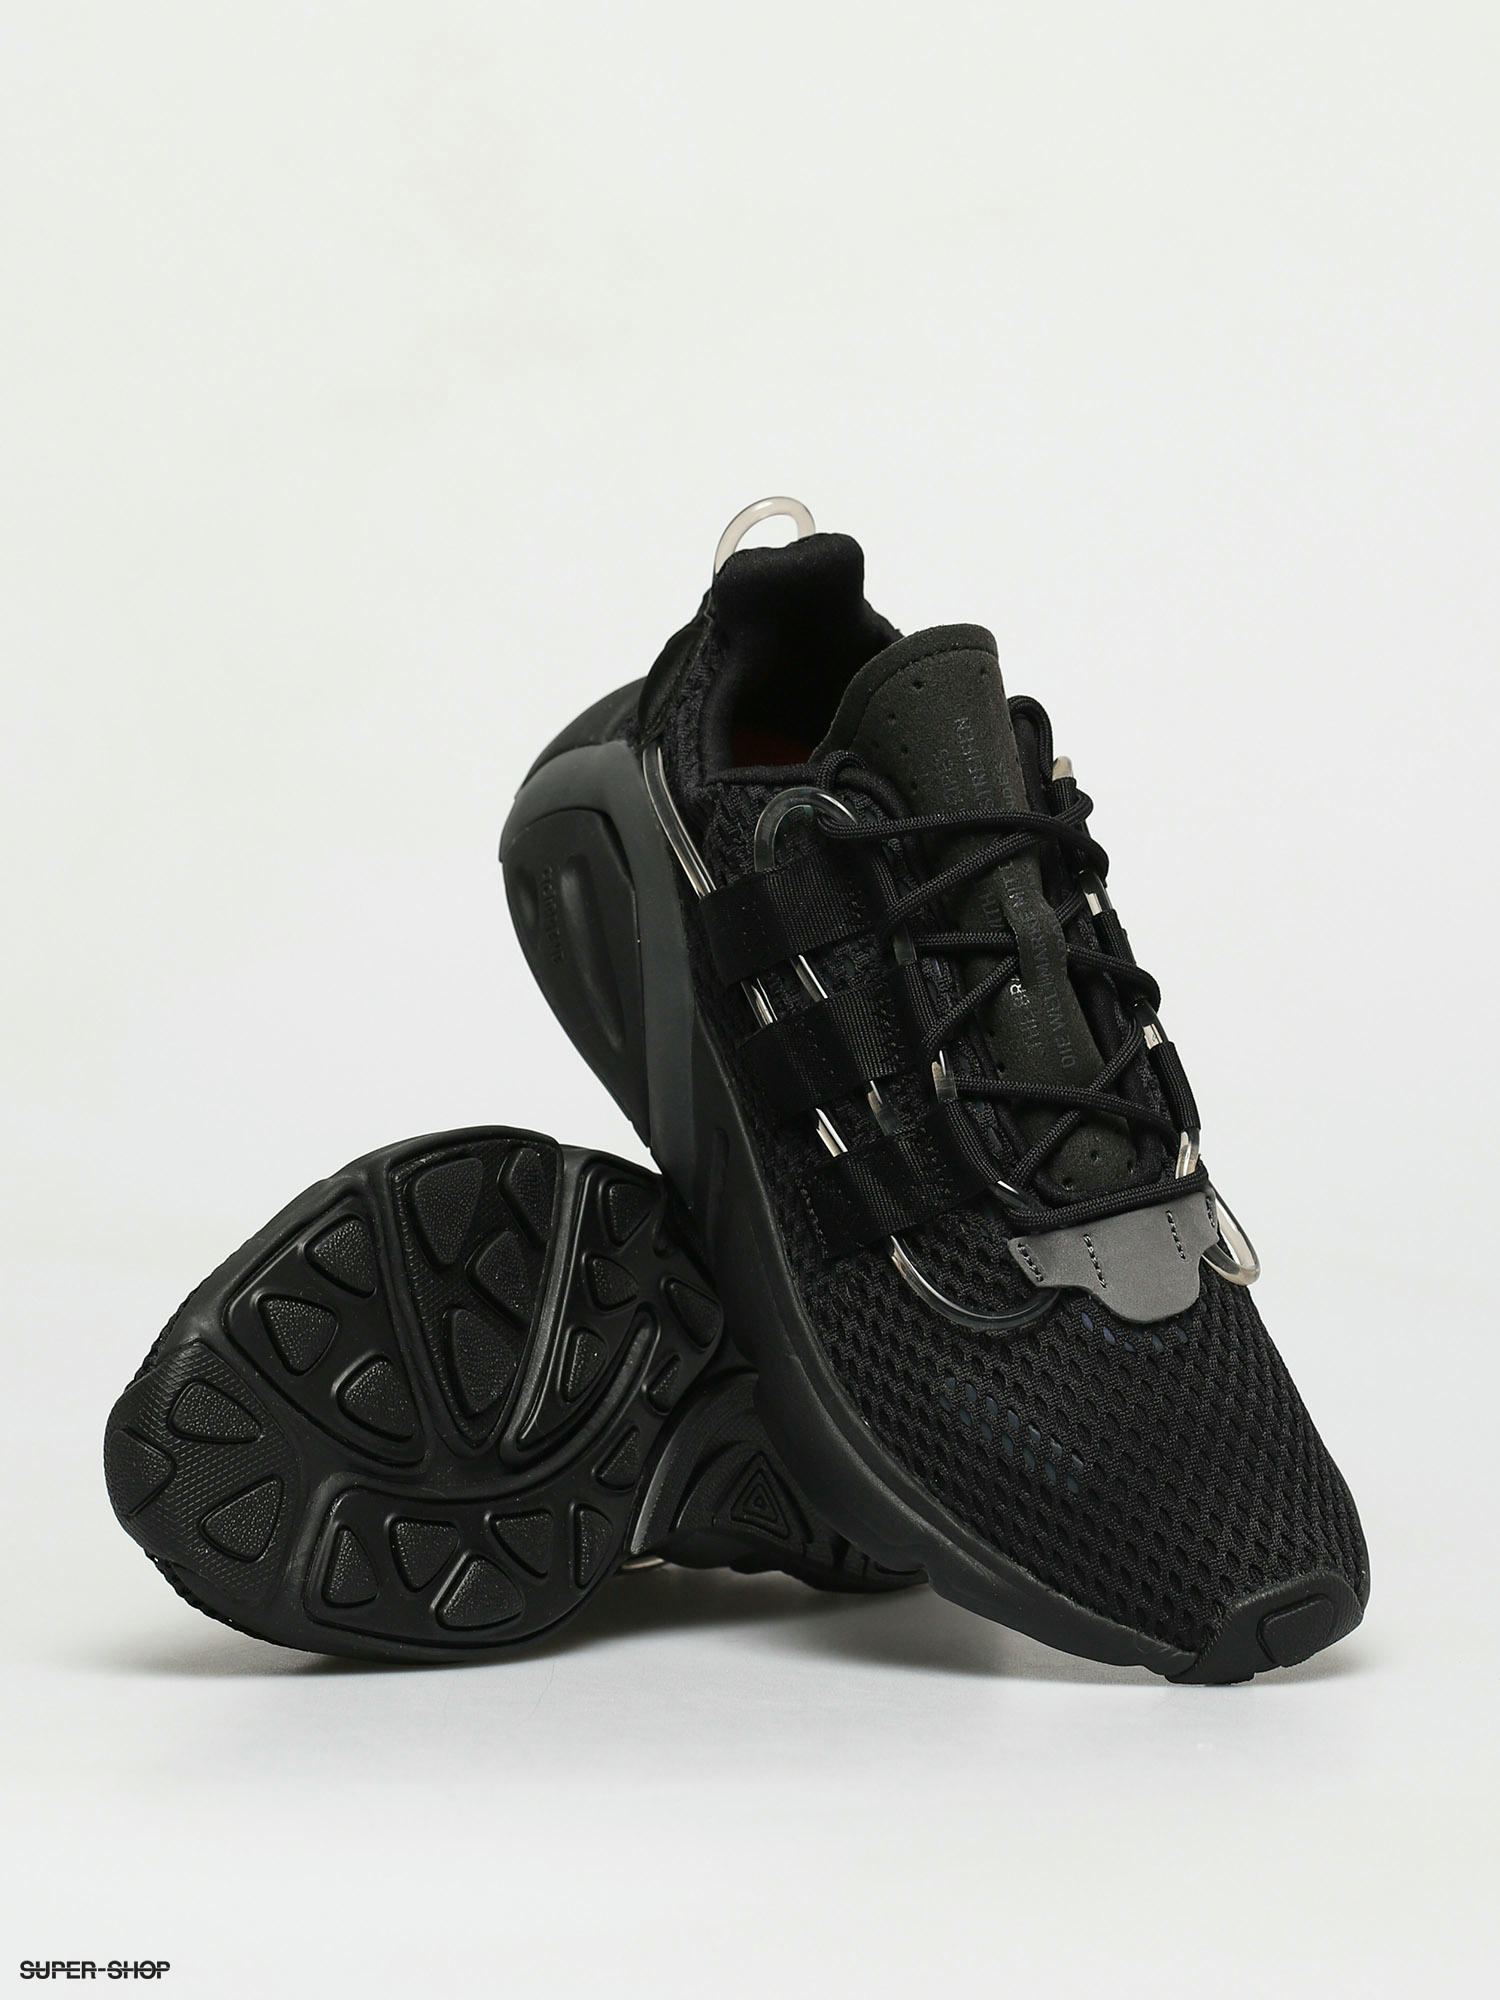 lxcon shoes black